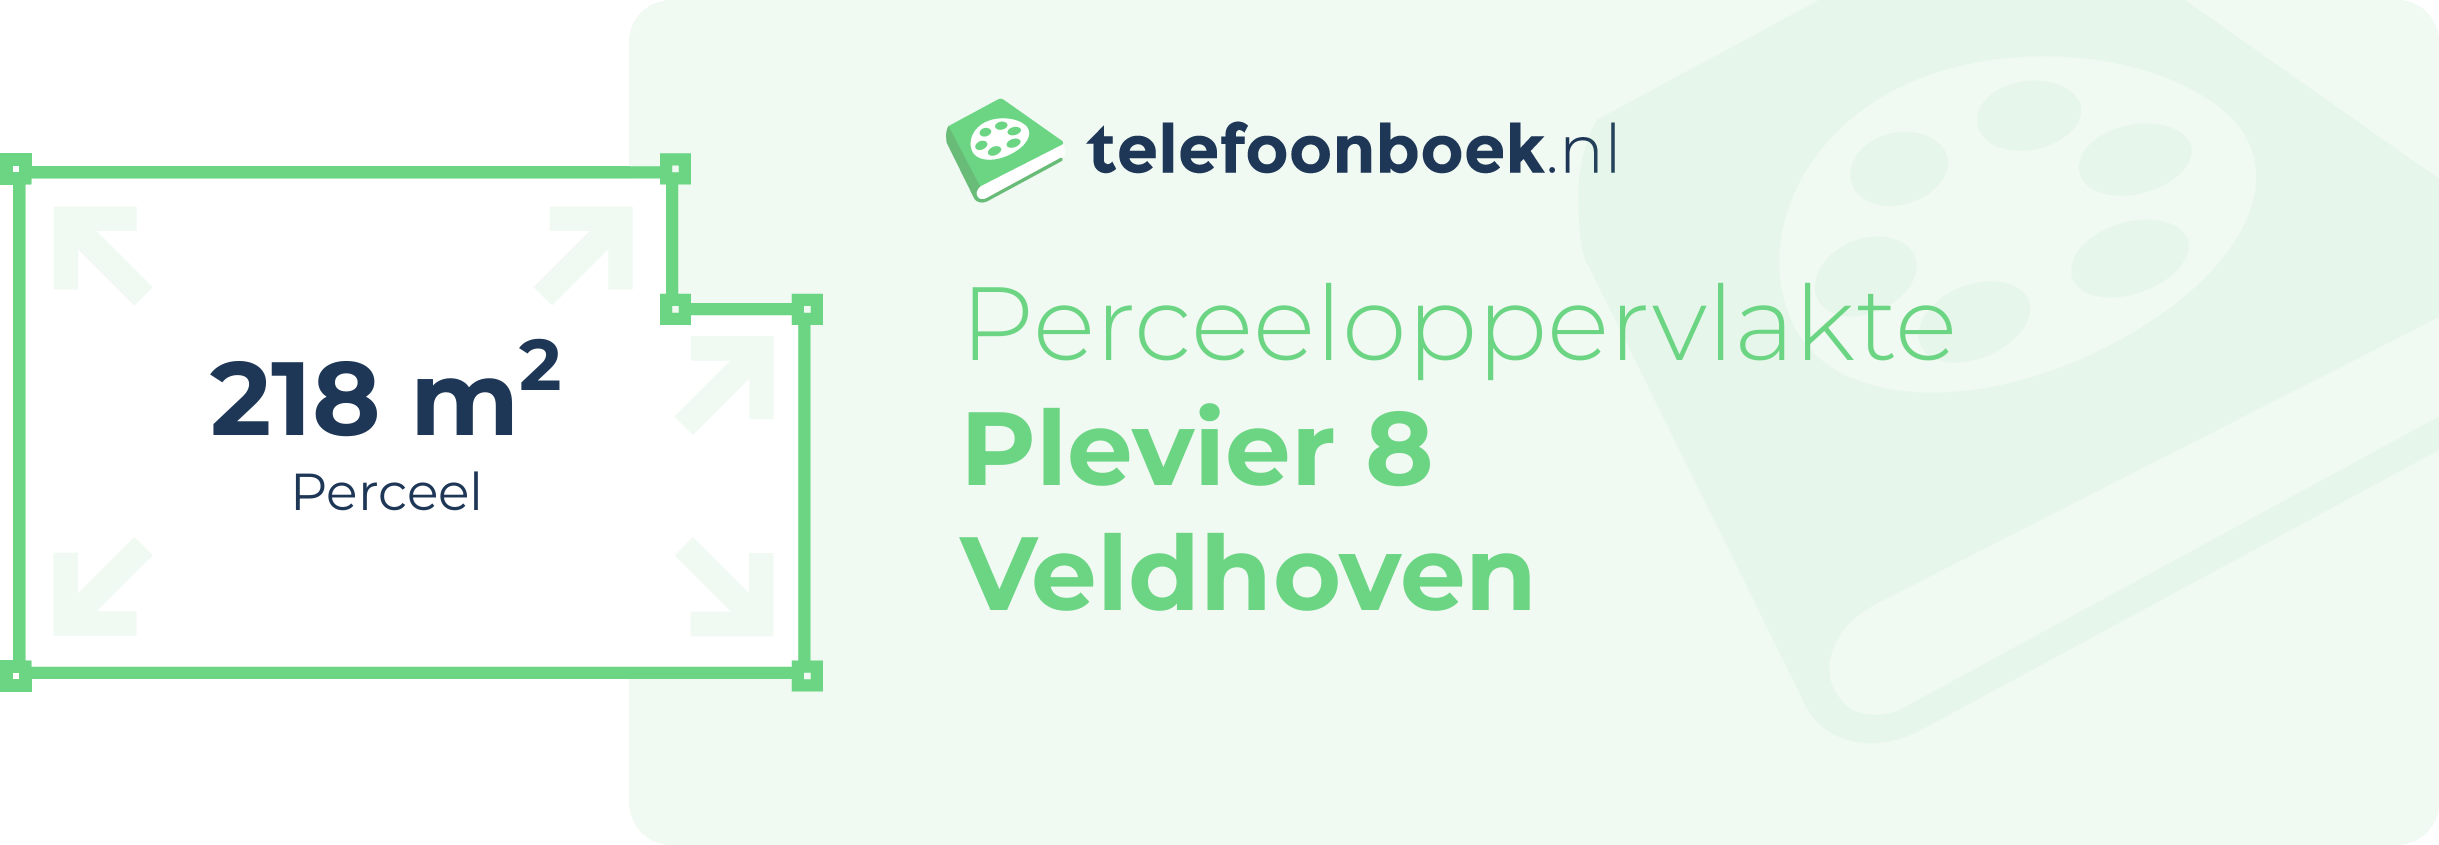 Perceeloppervlakte Plevier 8 Veldhoven